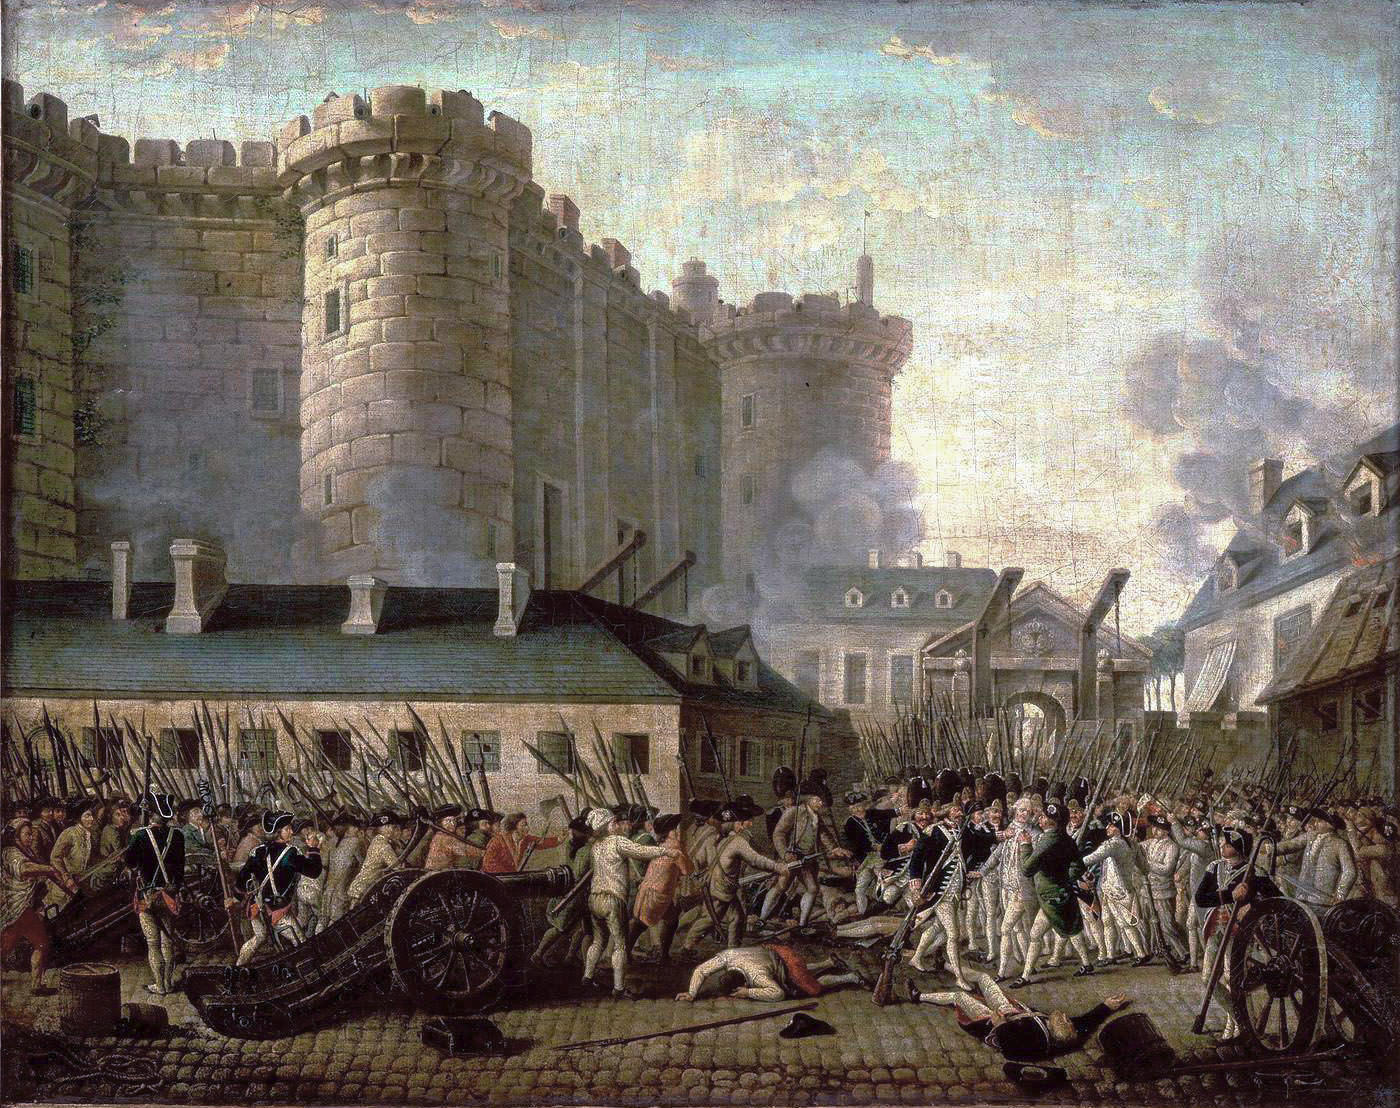 ภาพการบุกคุกบัสตีย์ อันเป็นที่มาของวันชาติฝรั่งเศส